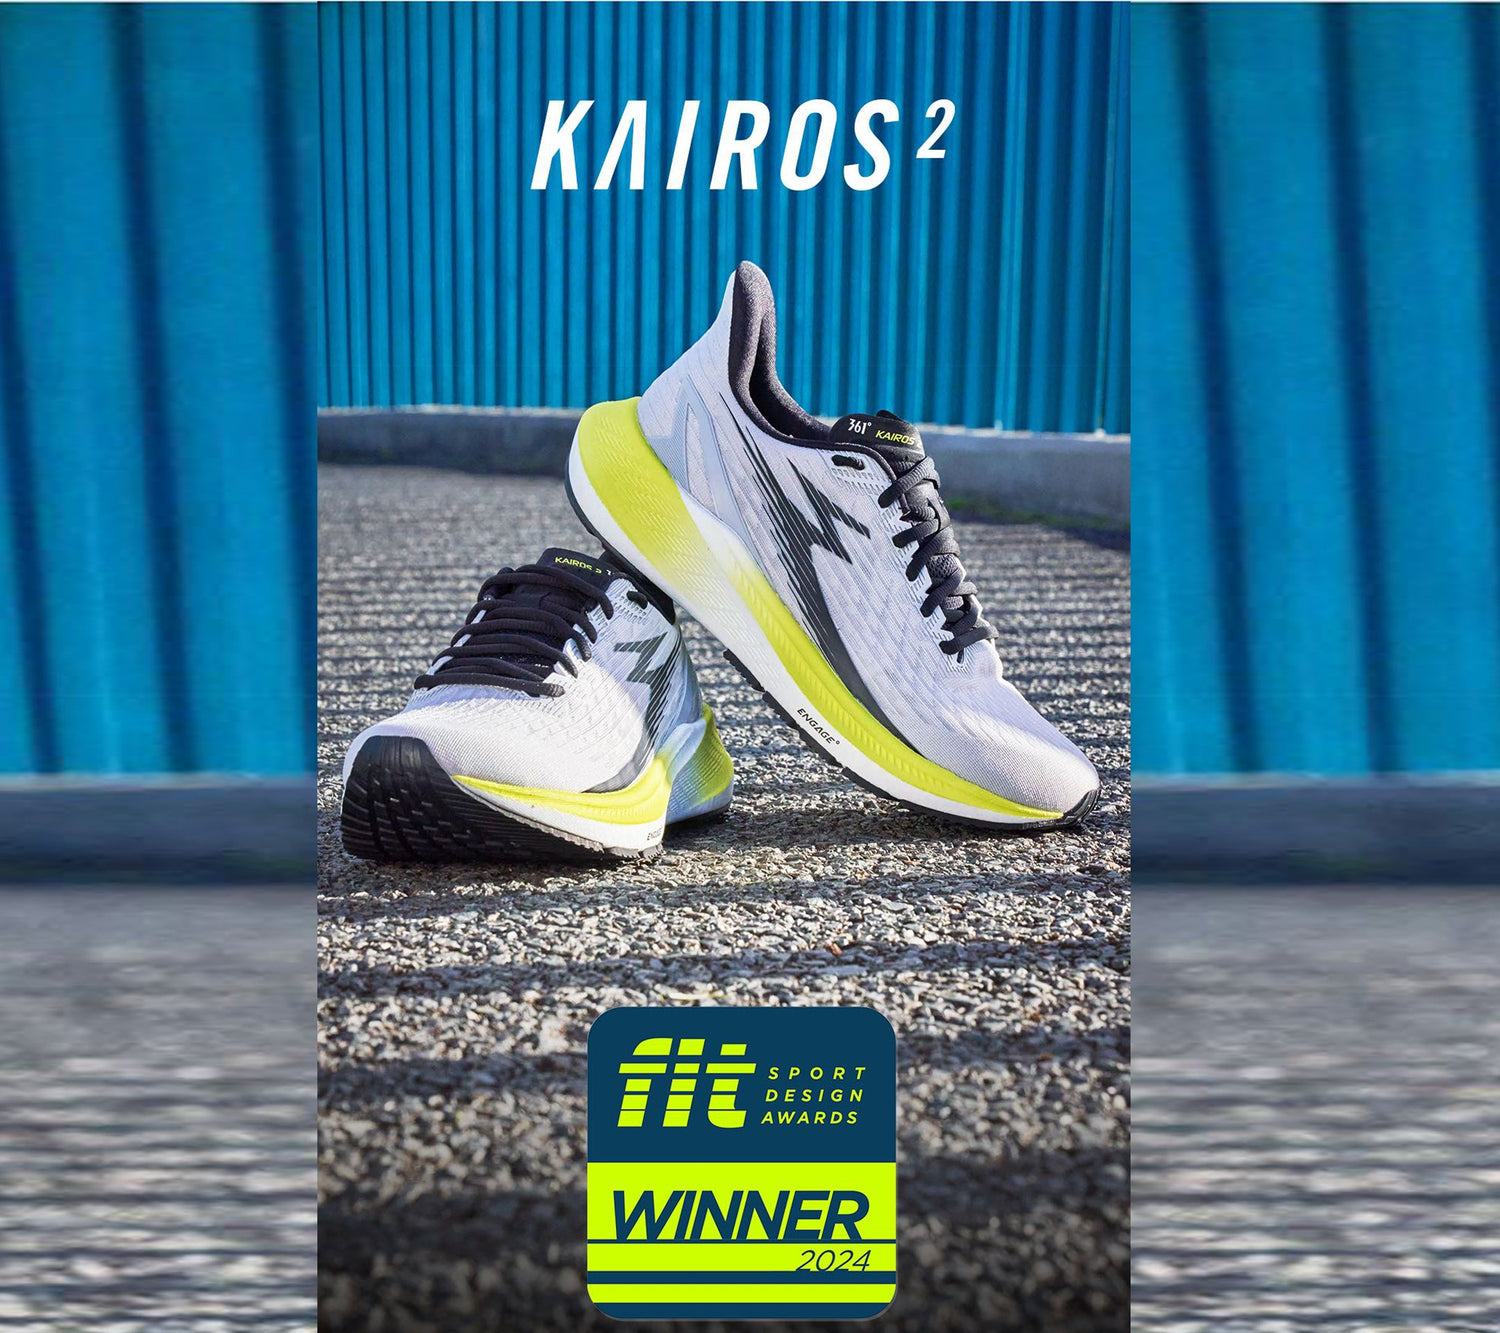 🏆 IT’S A WINNER! 🏆Kairos 2: The Award-Winning Innovation in Sportswear Design